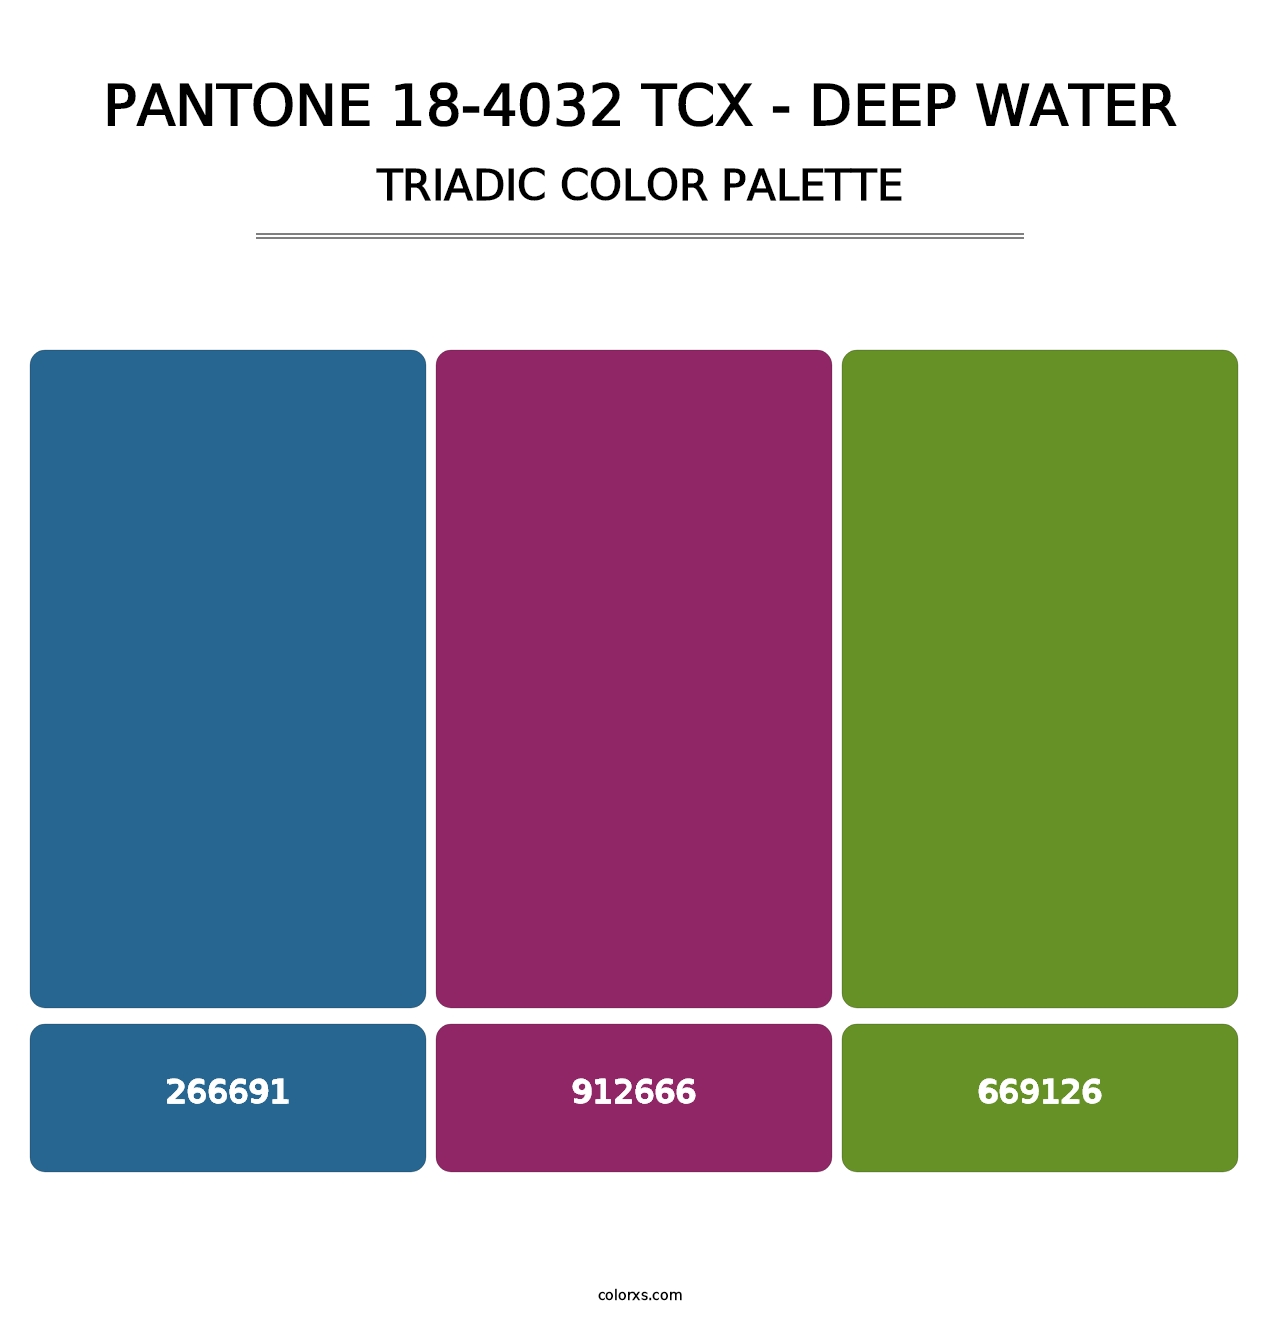 PANTONE 18-4032 TCX - Deep Water - Triadic Color Palette